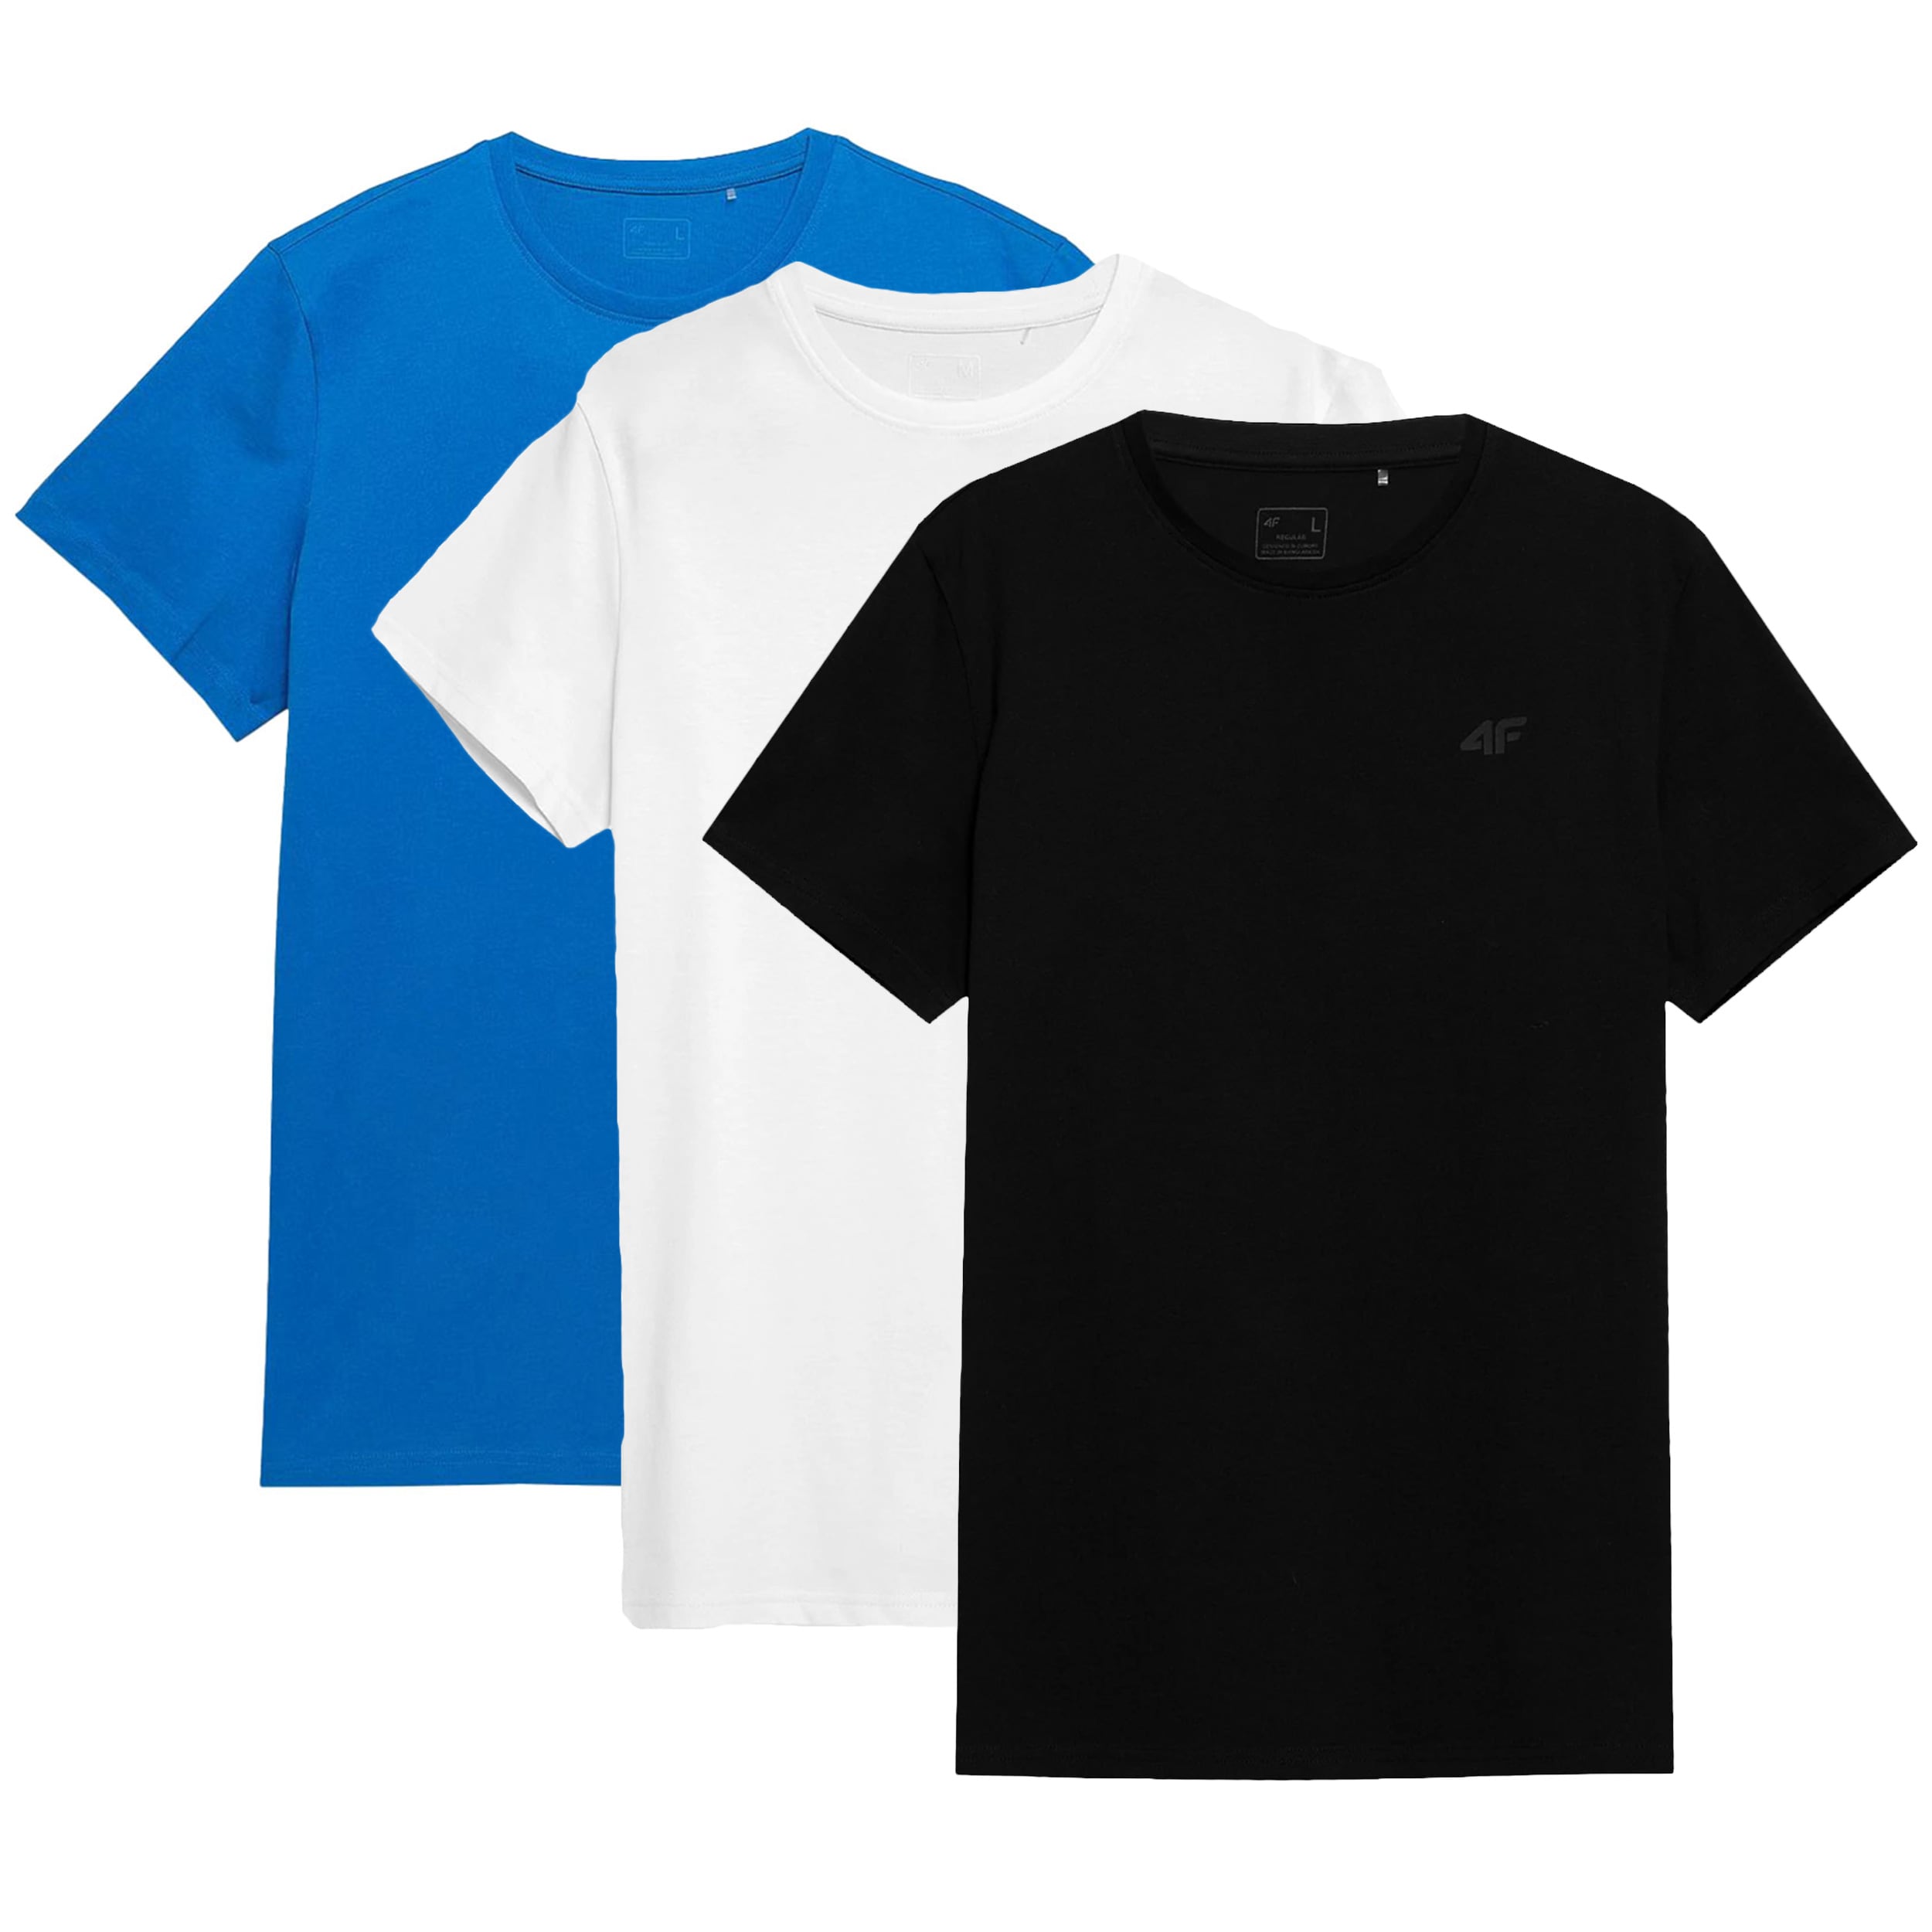 Футболка T-shirt 4F TTSHM536 Біла Синя Глибоко-чорна - 3 шт.